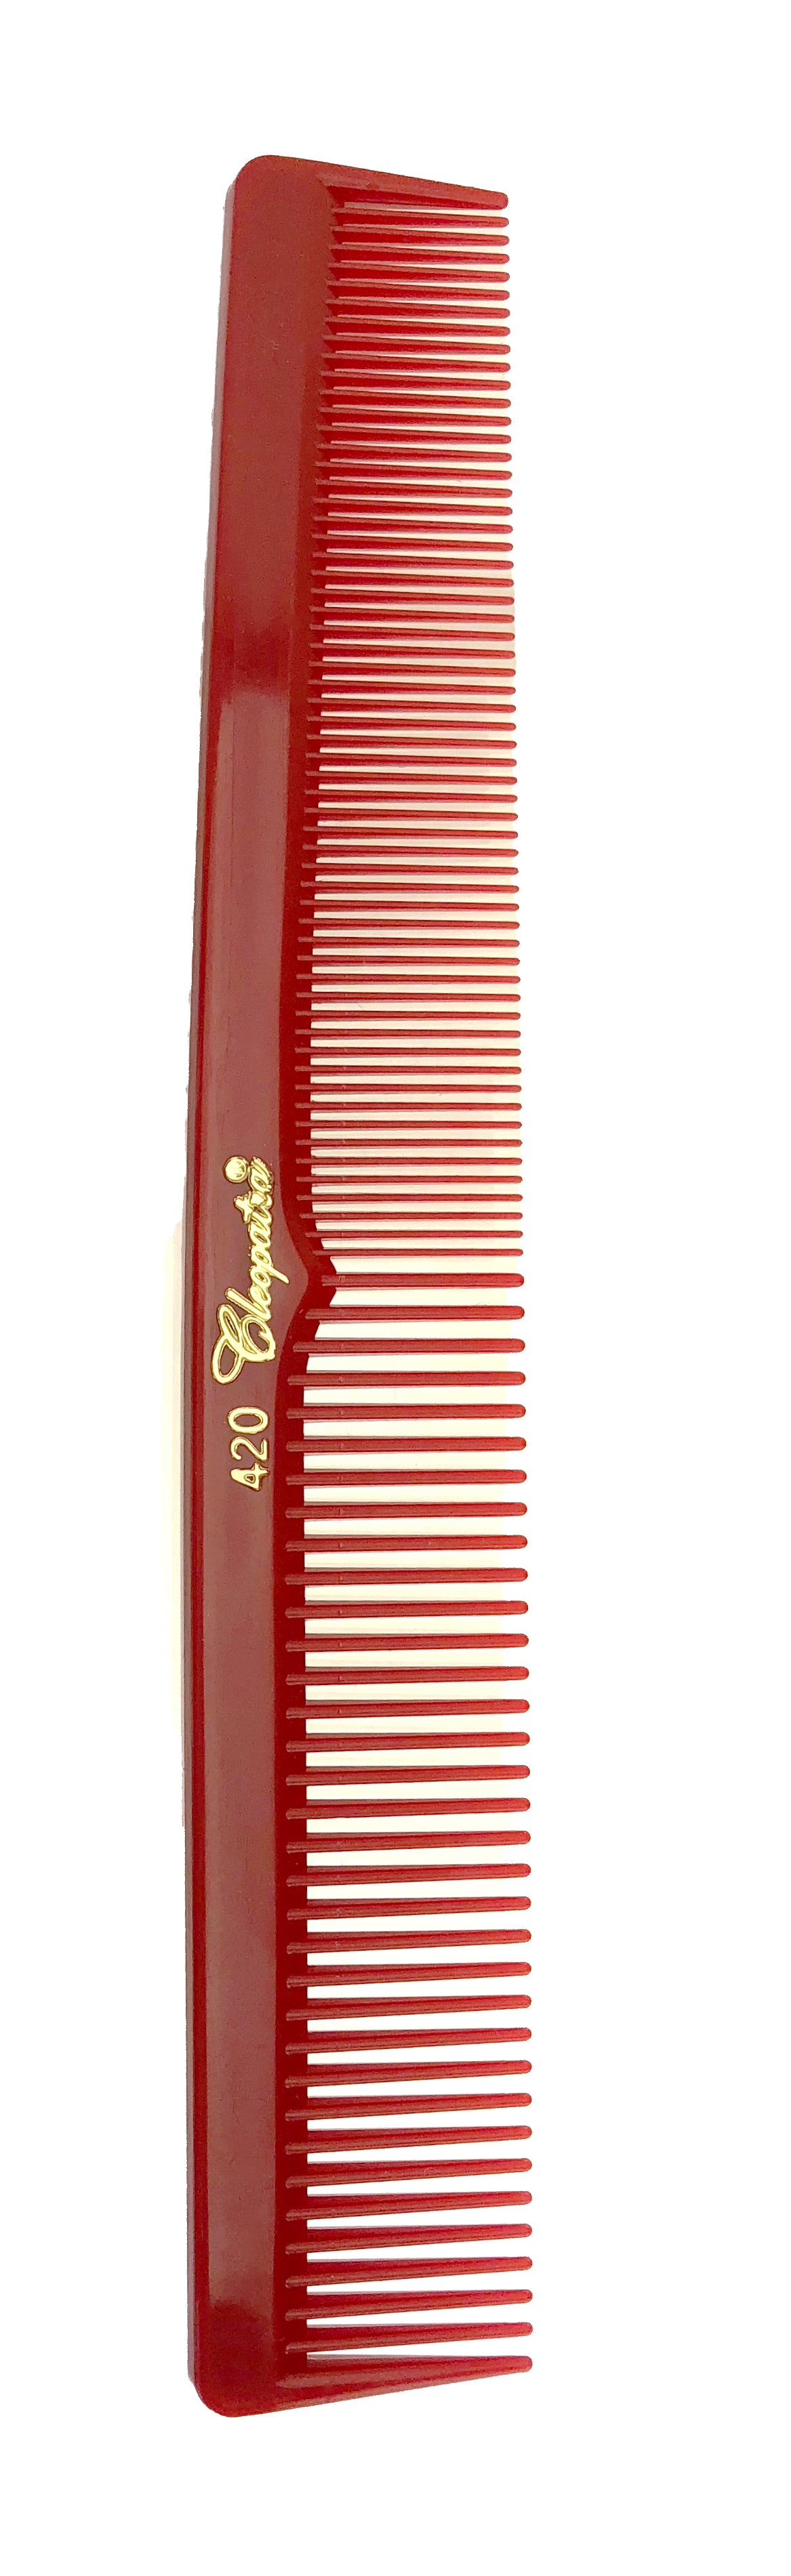 comb barber comb cutting comb hair comb